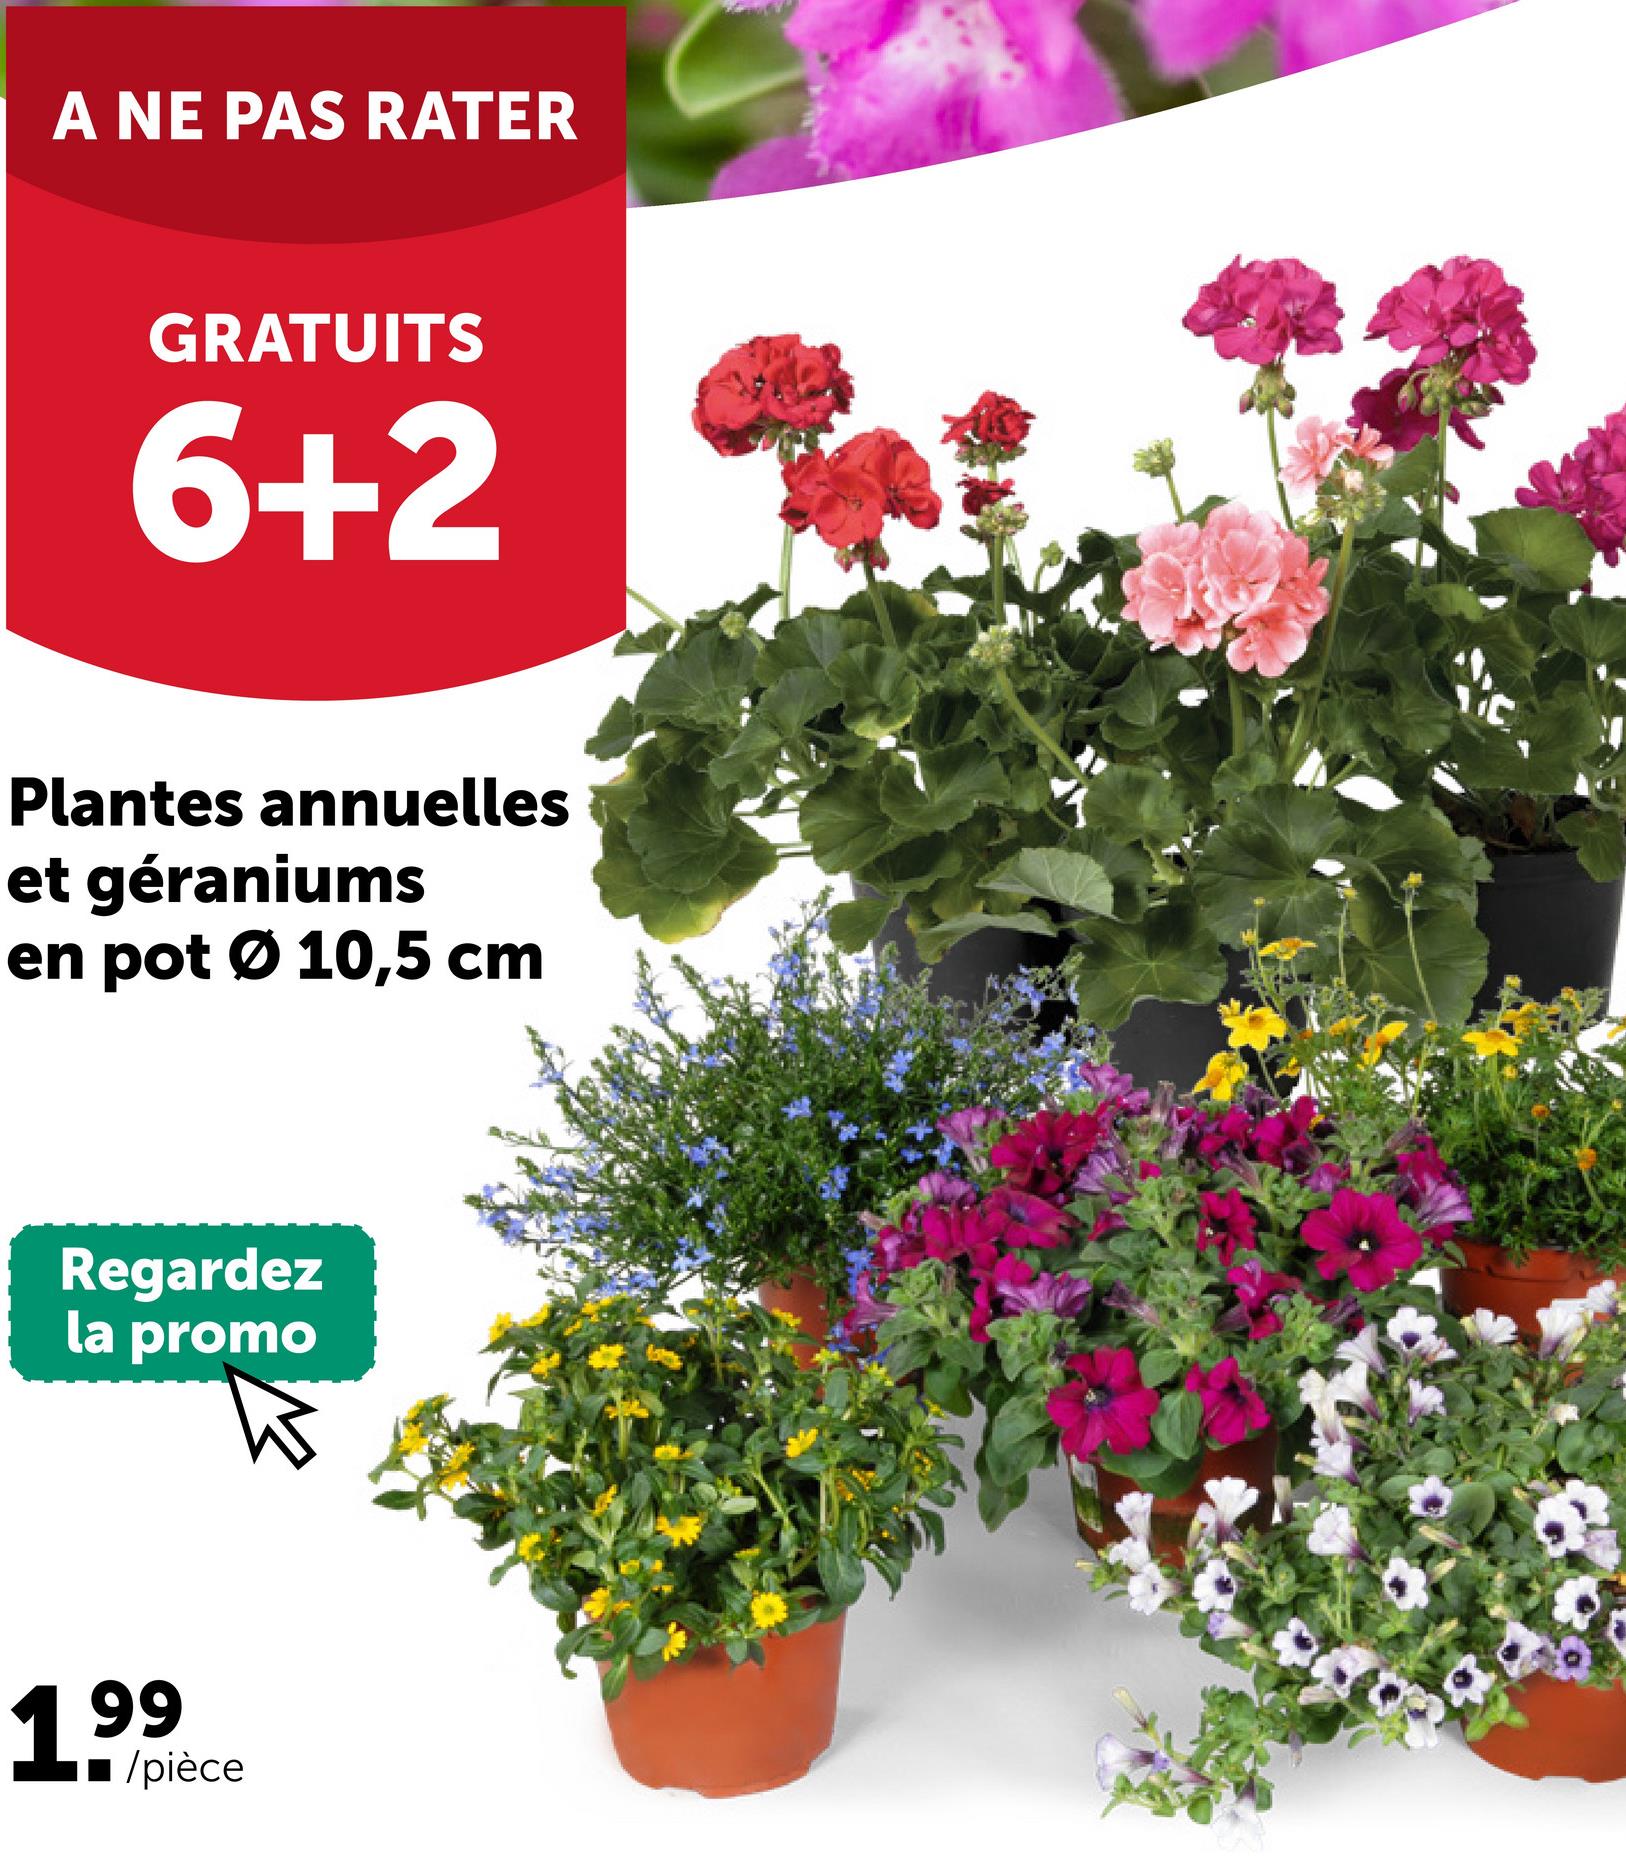 A NE PAS RATER
GRATUITS
6+2
Plantes annuelles
et géraniums
en pot Ø 10,5 cm
Regardez
la promo
199
/pièce